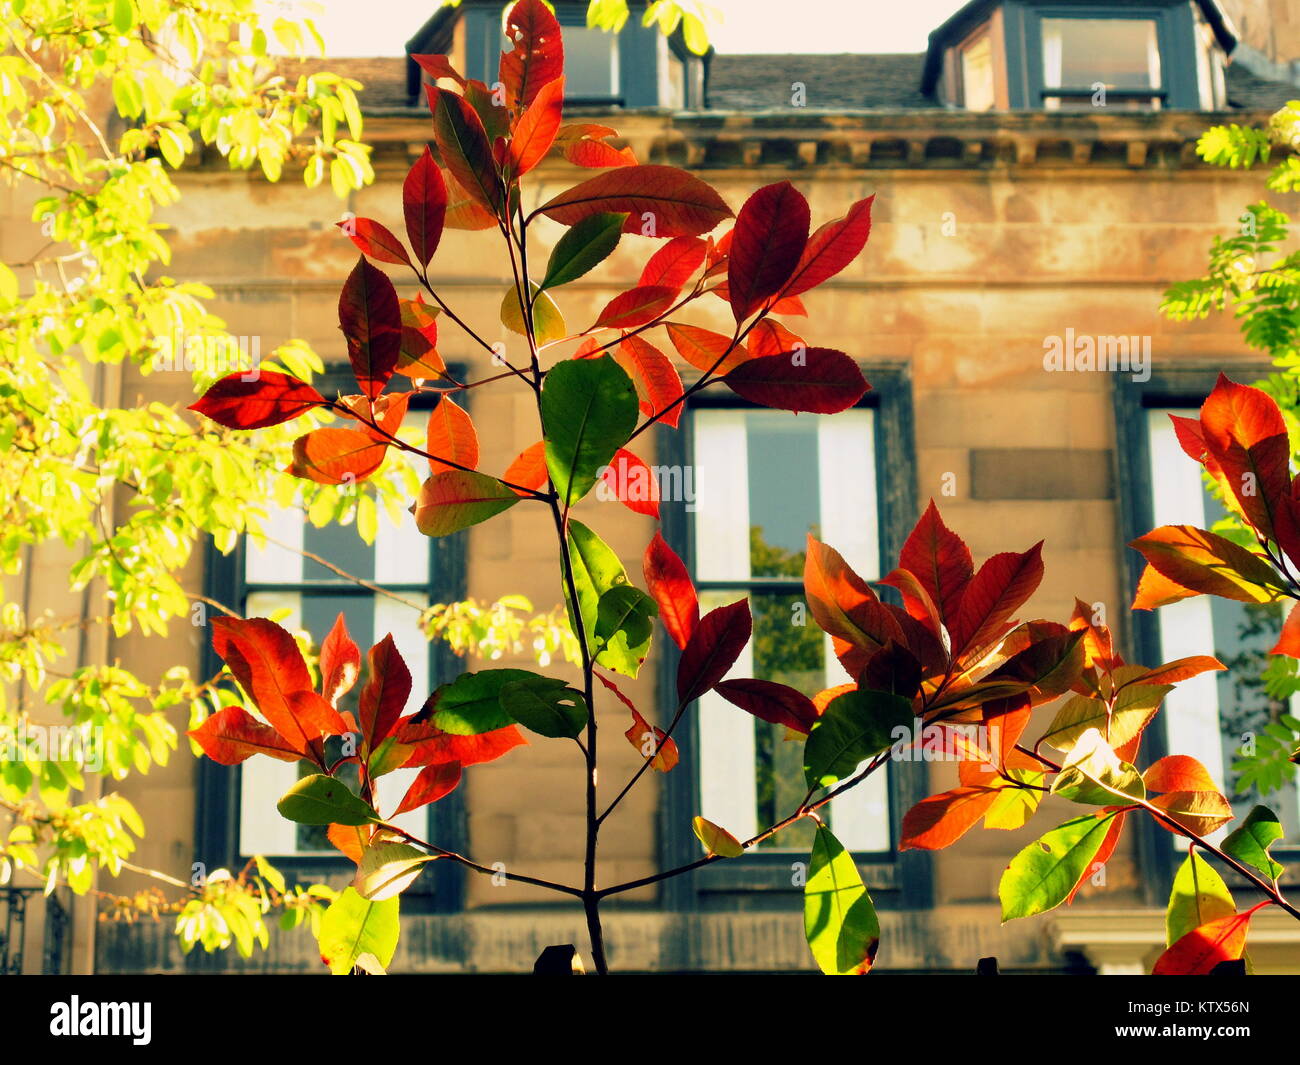 Sonnige helle Garten bäume dappled Licht durch treibt Victorian Edwardian englischen Stil Reihenhäuser Villen suburbia Konzept der sommersalat Tage Stockfoto